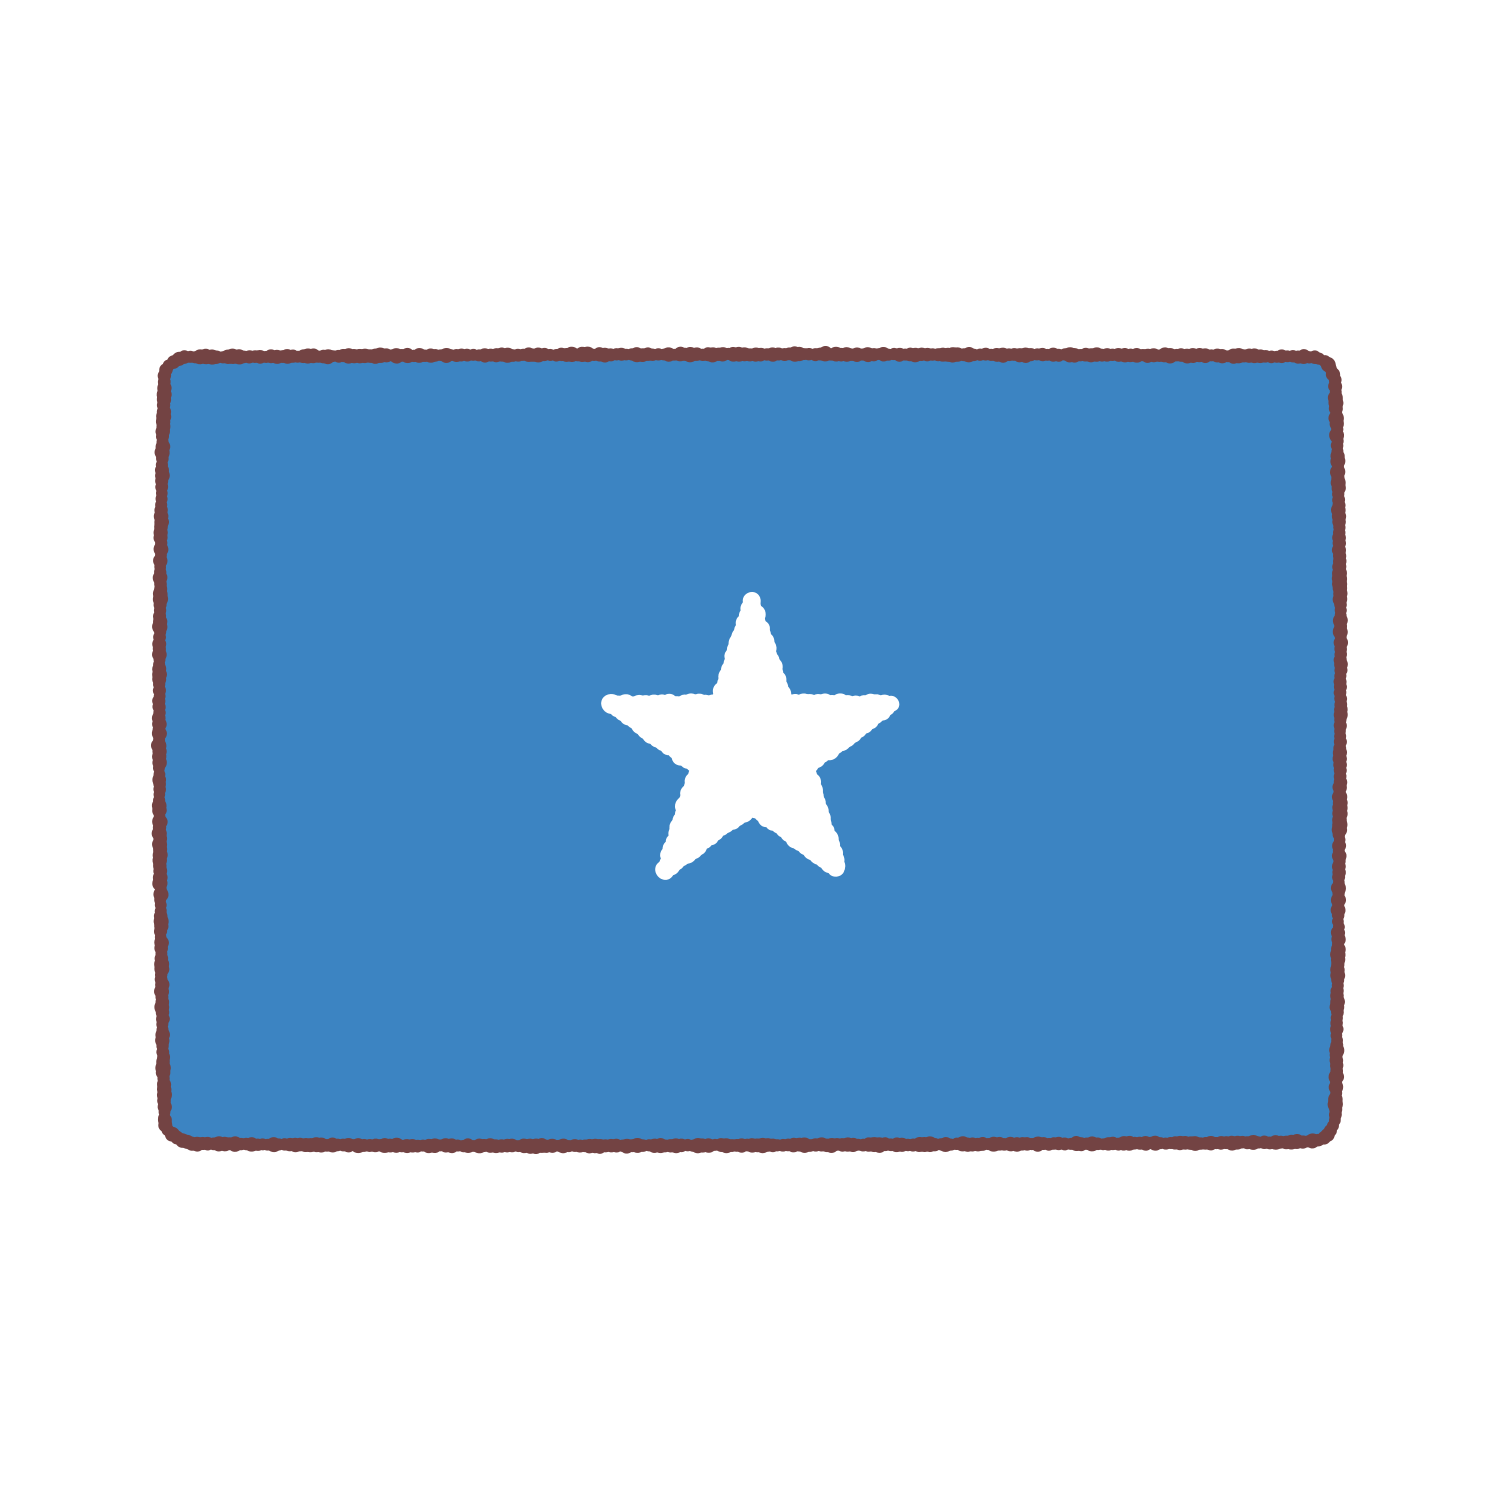 ソマリア国旗のイラスト